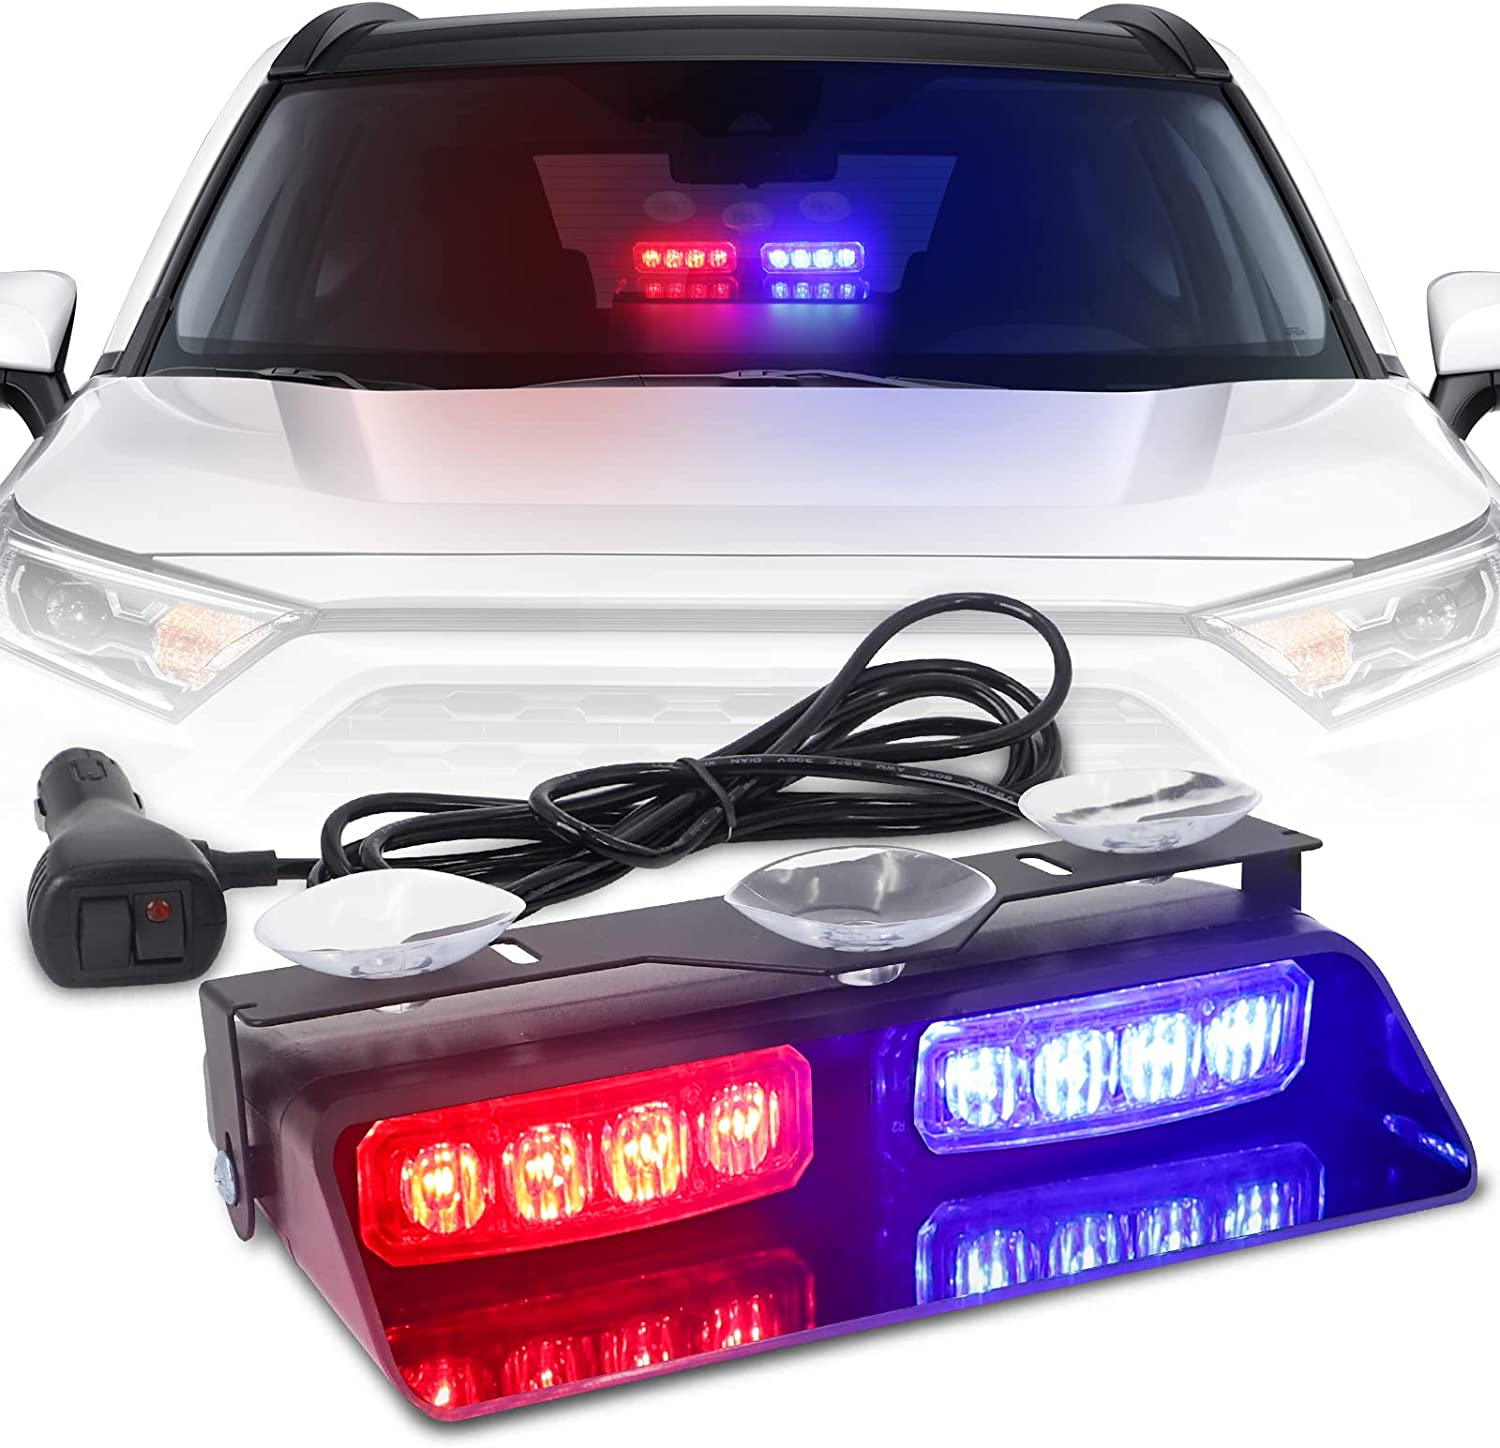 Majaky do auta jako vystrazné světlo 16 LED (32W) - multibarevné 18cm x 2ks s přísavkami